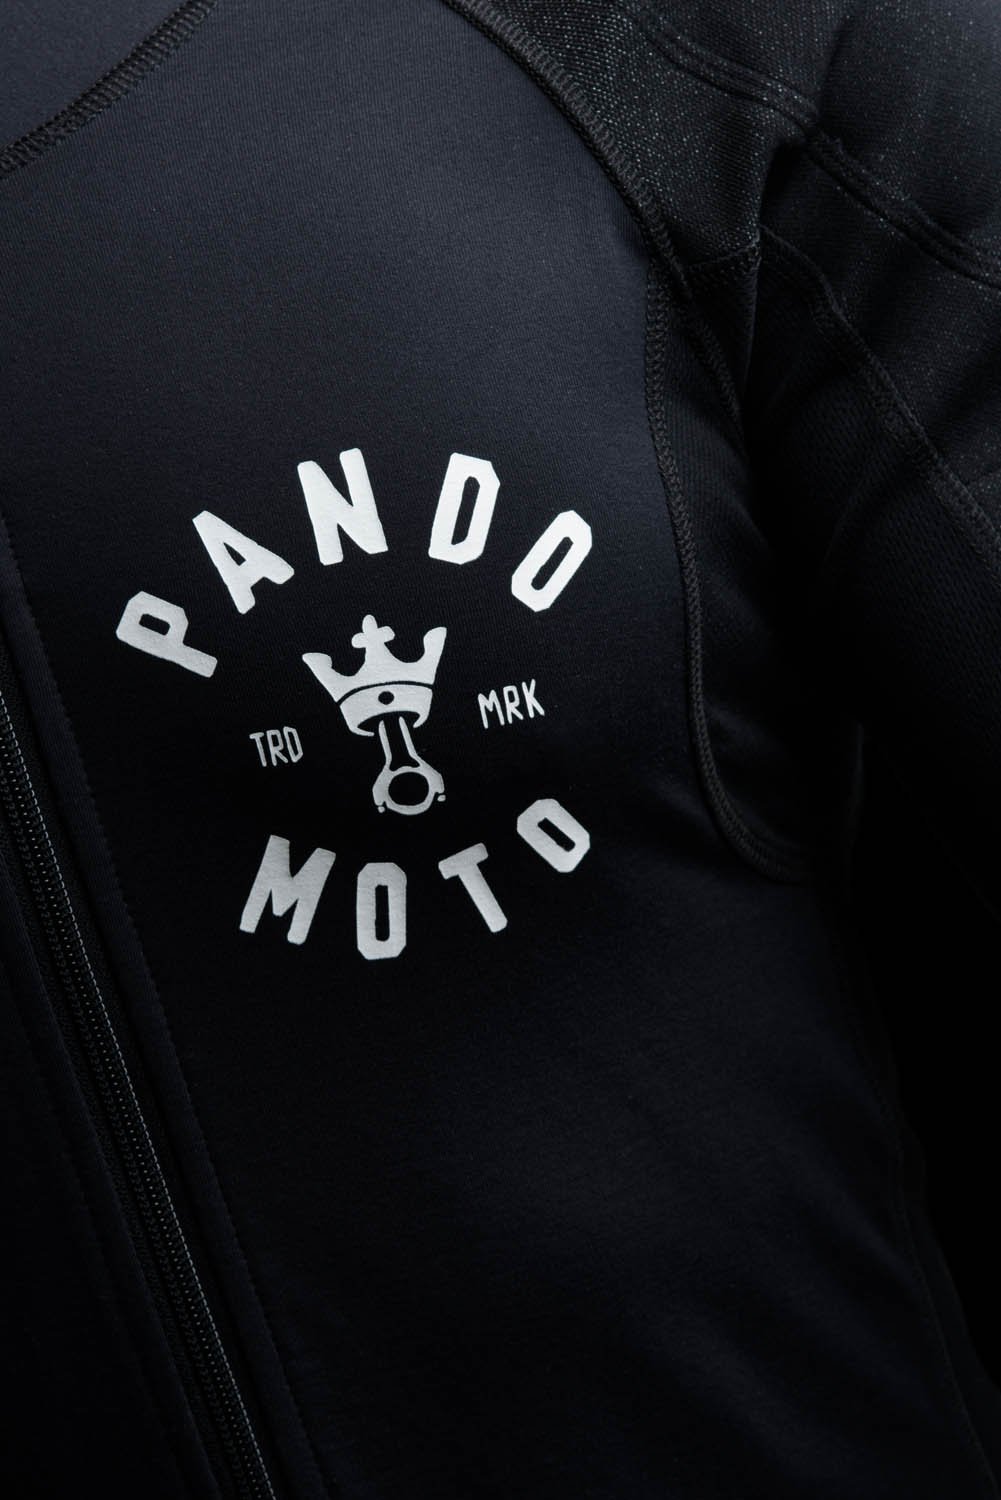 XL Polo Tee-Shirt de Paddock Pitline pour /équipe Courant des Motos Tyco Motorrad Hommes